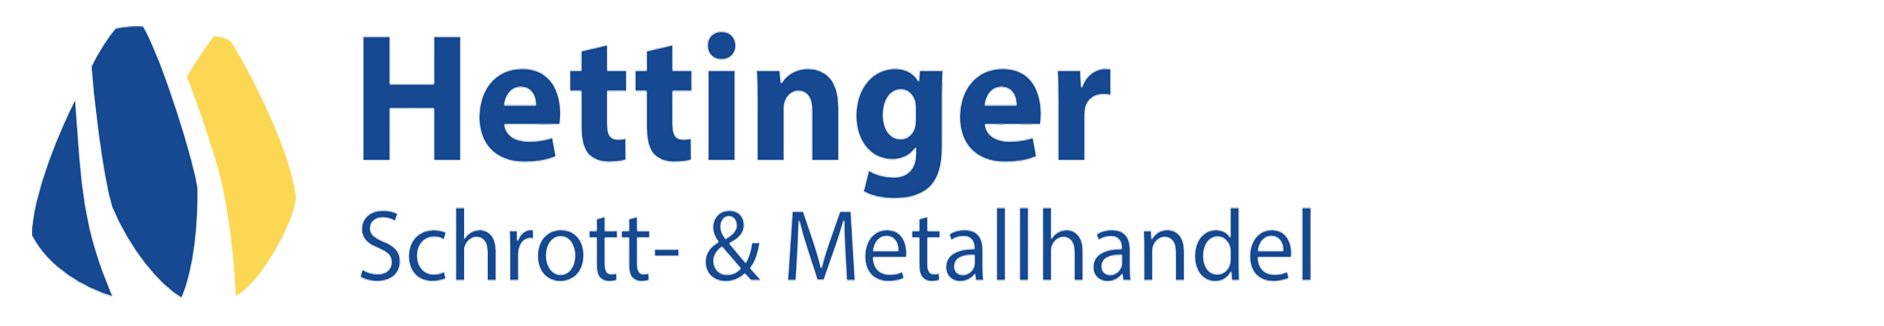 hettinger_logo